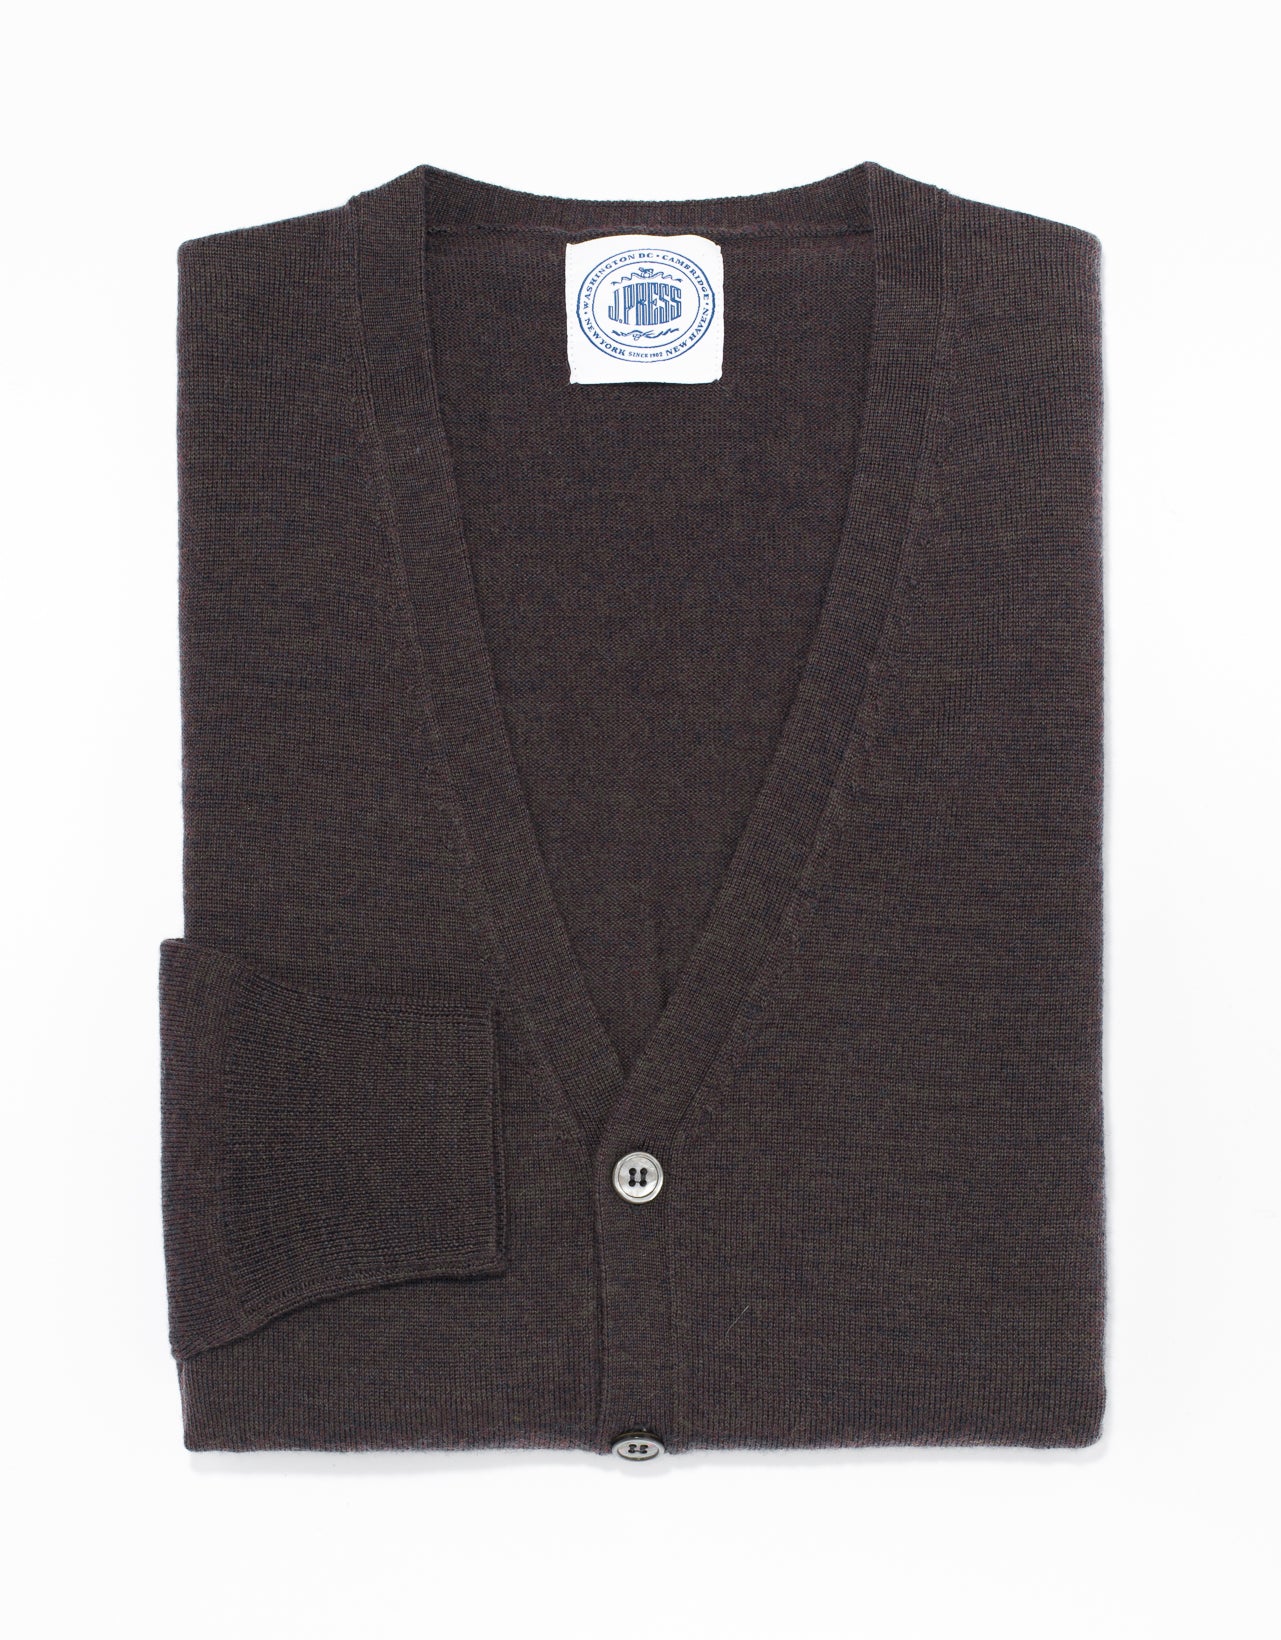 Men's Sweaters | Men's V-Neck Vests, V-Neck Sweaters & 1/4 Zip Ups ...